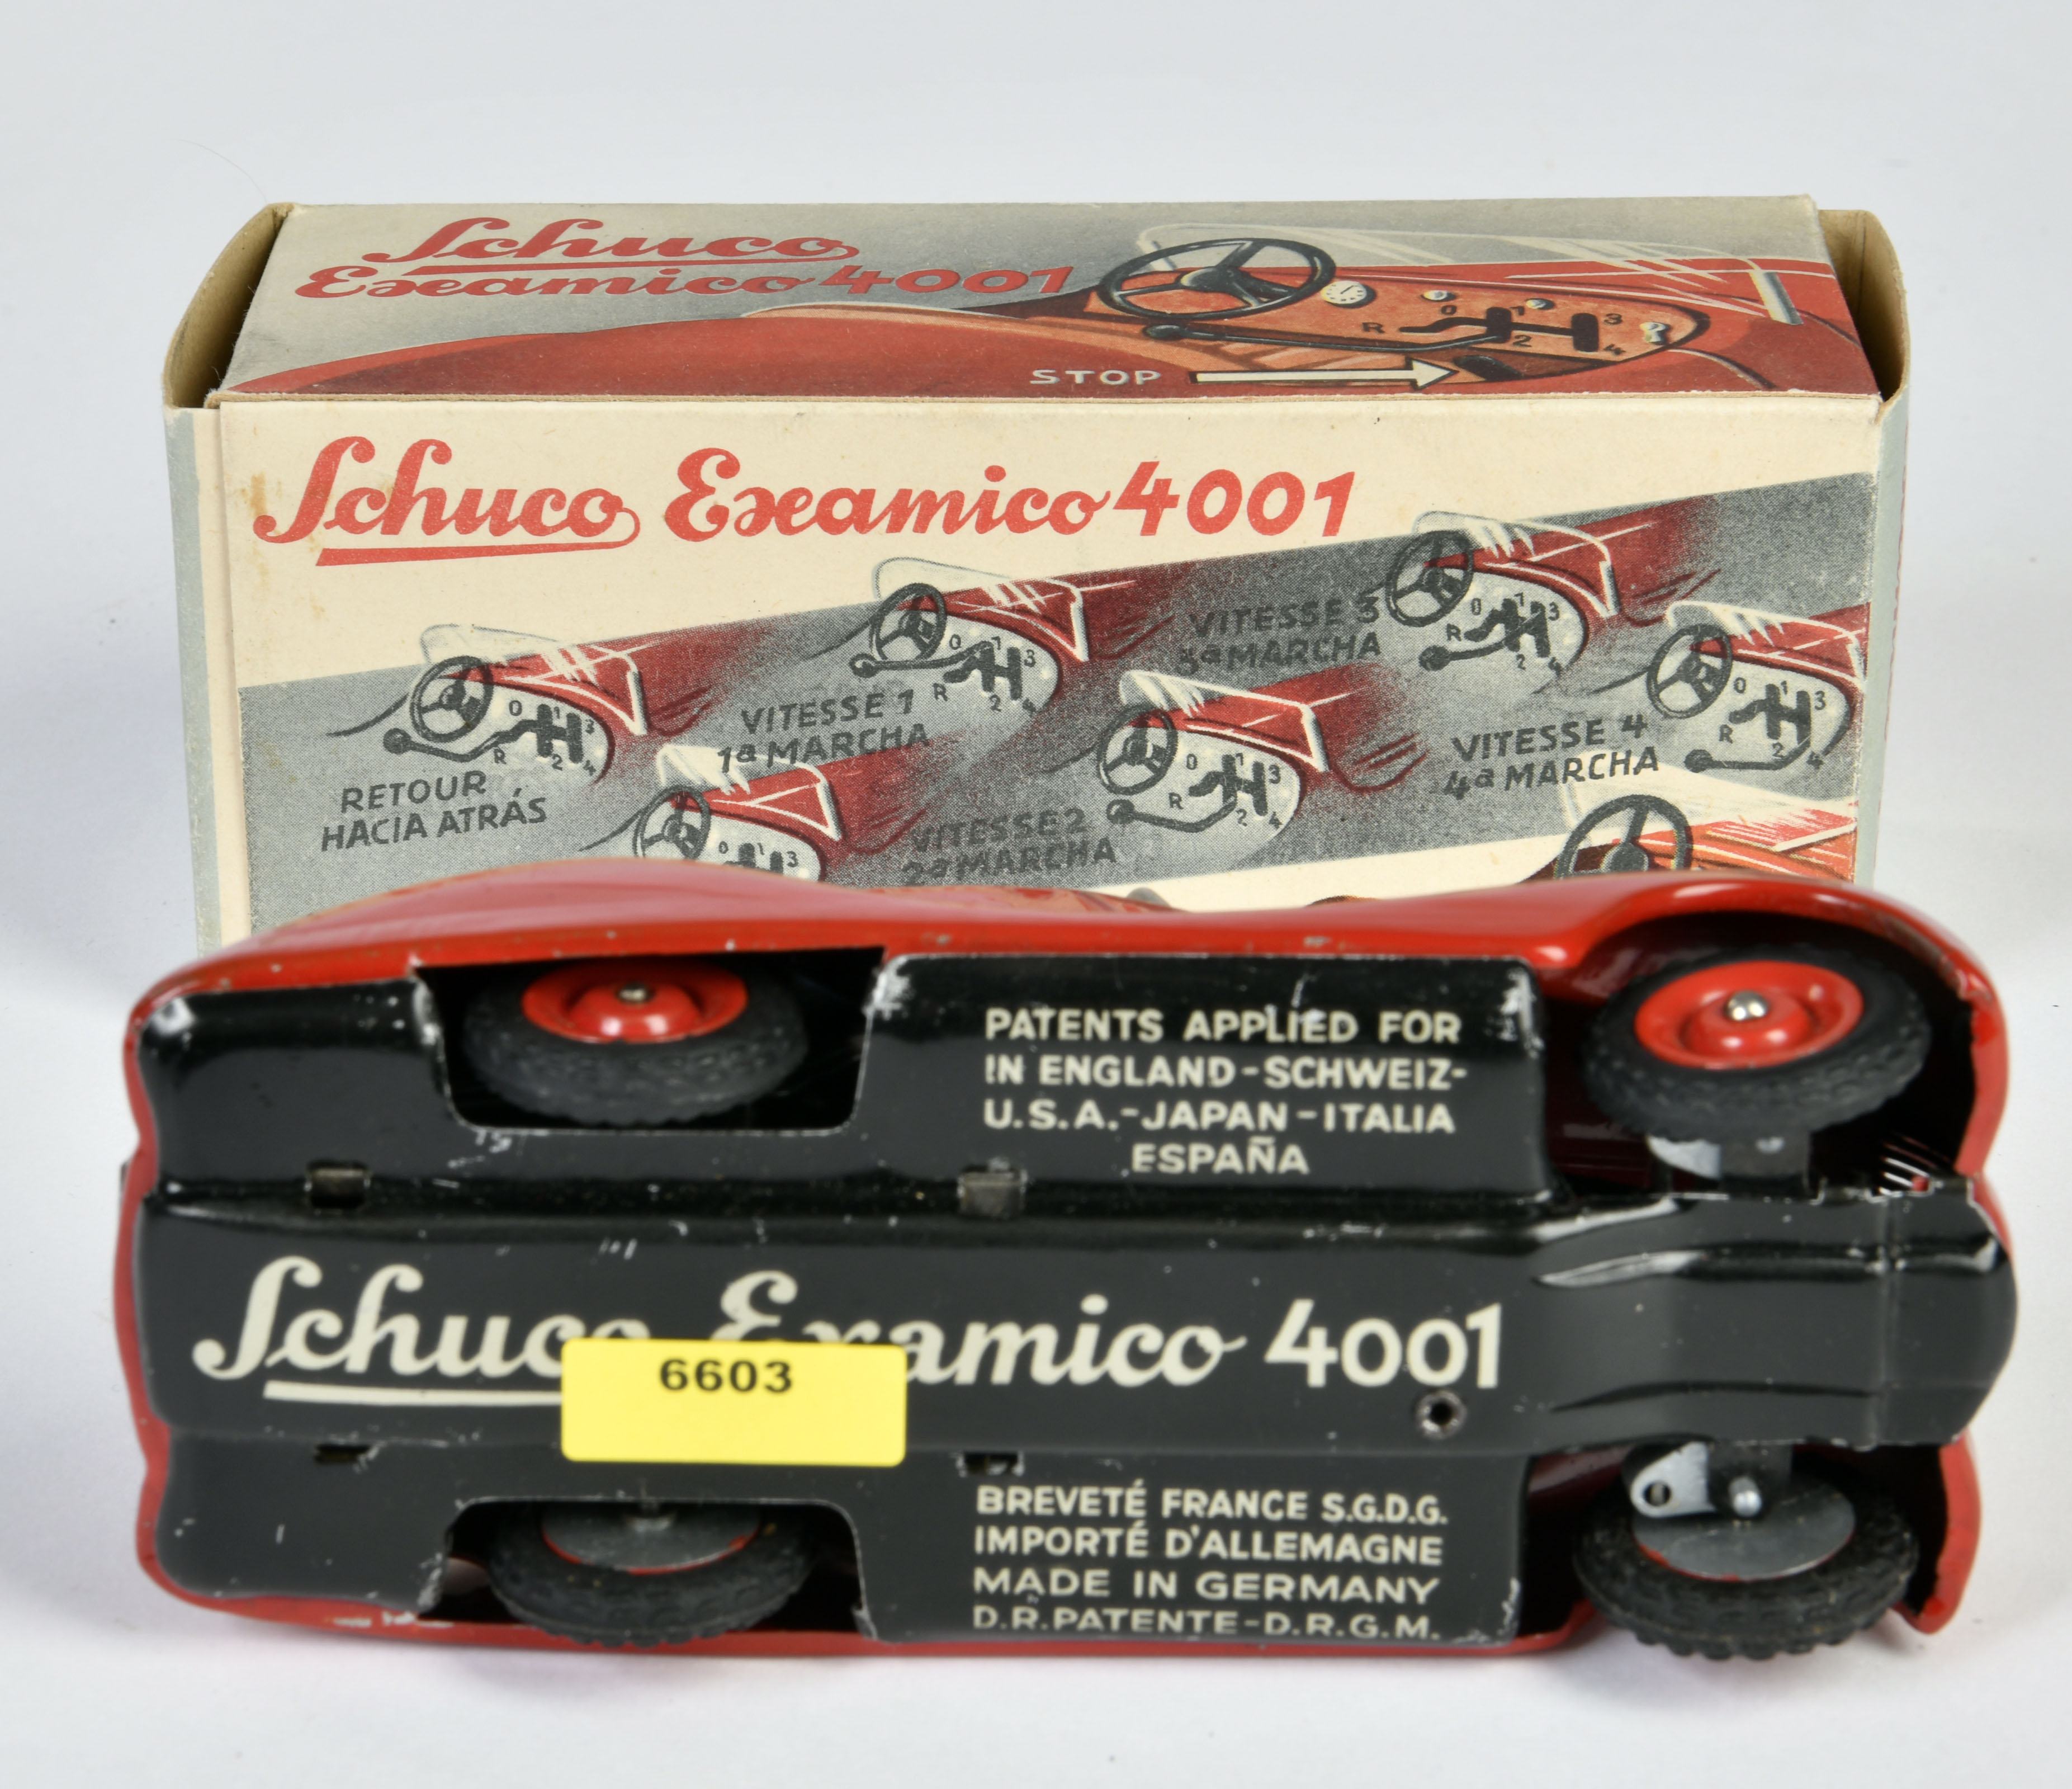 Schuco, Examico 4001, Germany pw, 14,5 cm, tin, cw ok, box C 1-, C 1- - Image 3 of 3